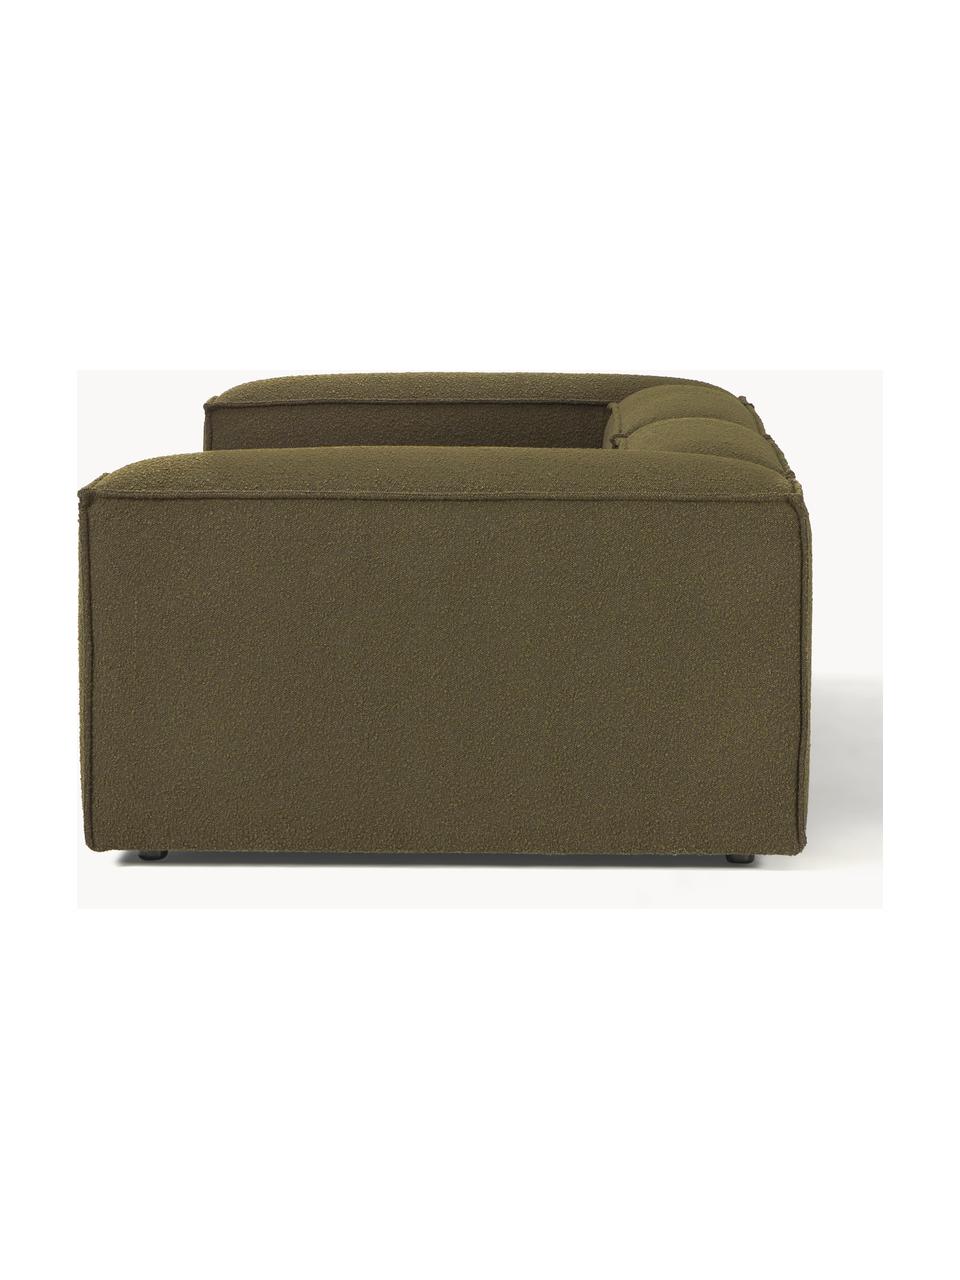 Canapé modulable 3 places en tissu bouclé Lennon, Bouclé vert olive, larg. 238 x prof. 119 cm